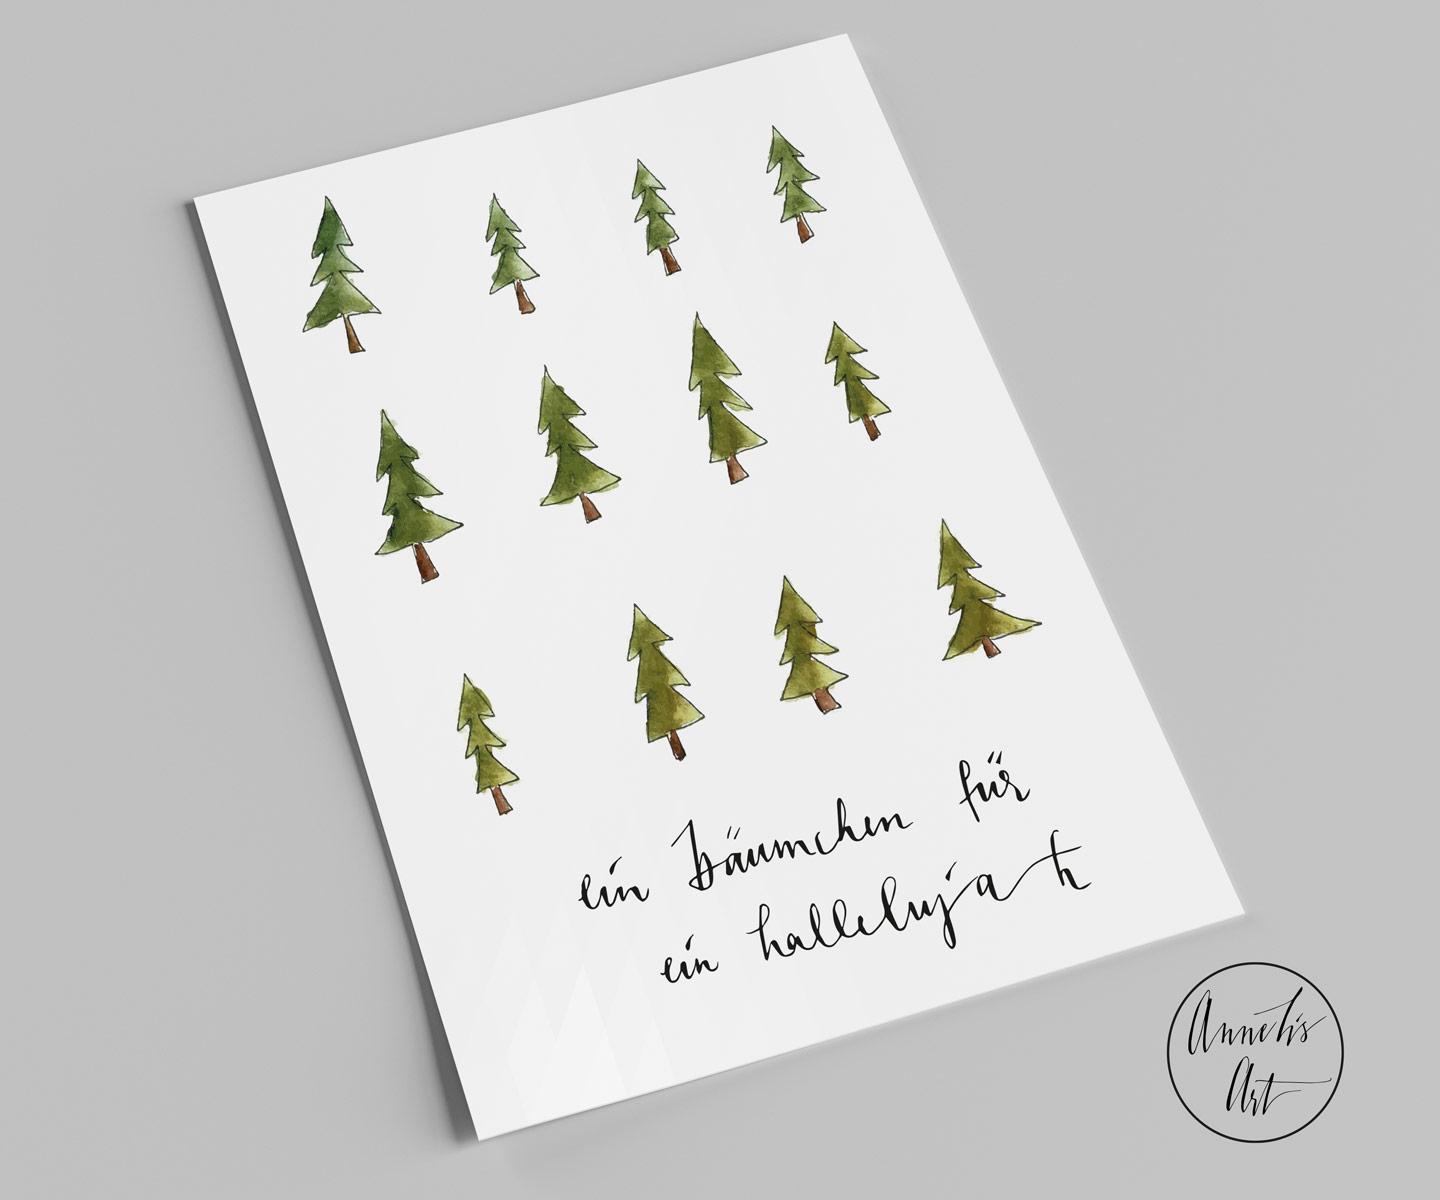 Postkarte | Weihnachtskarte | Bäumchen für ein Hallelujah